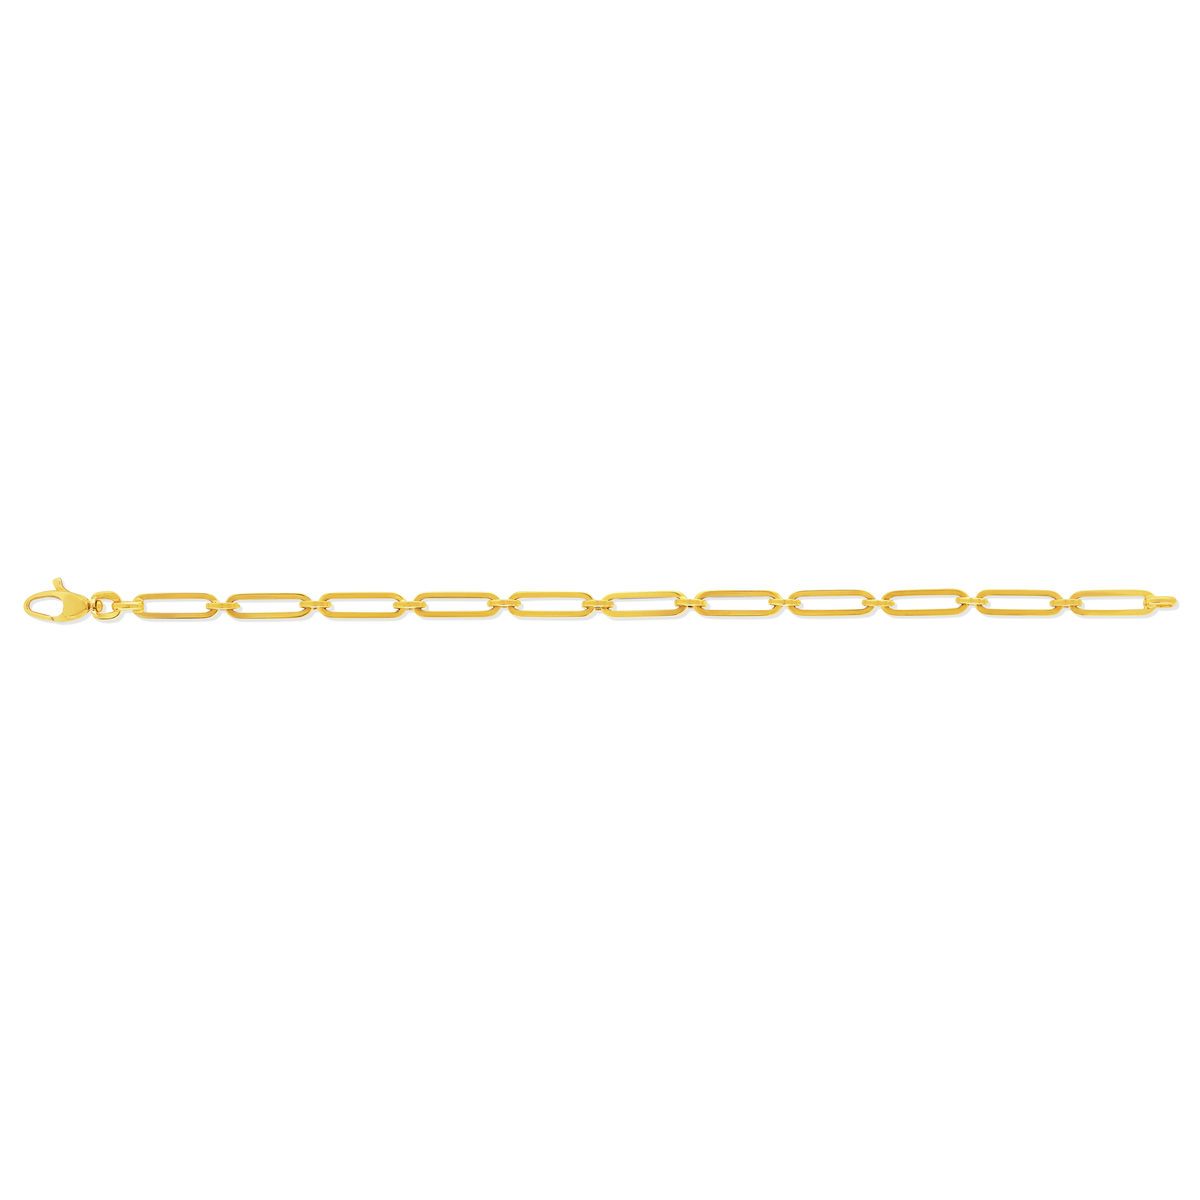 Bracelet or jaune 375 19 cm